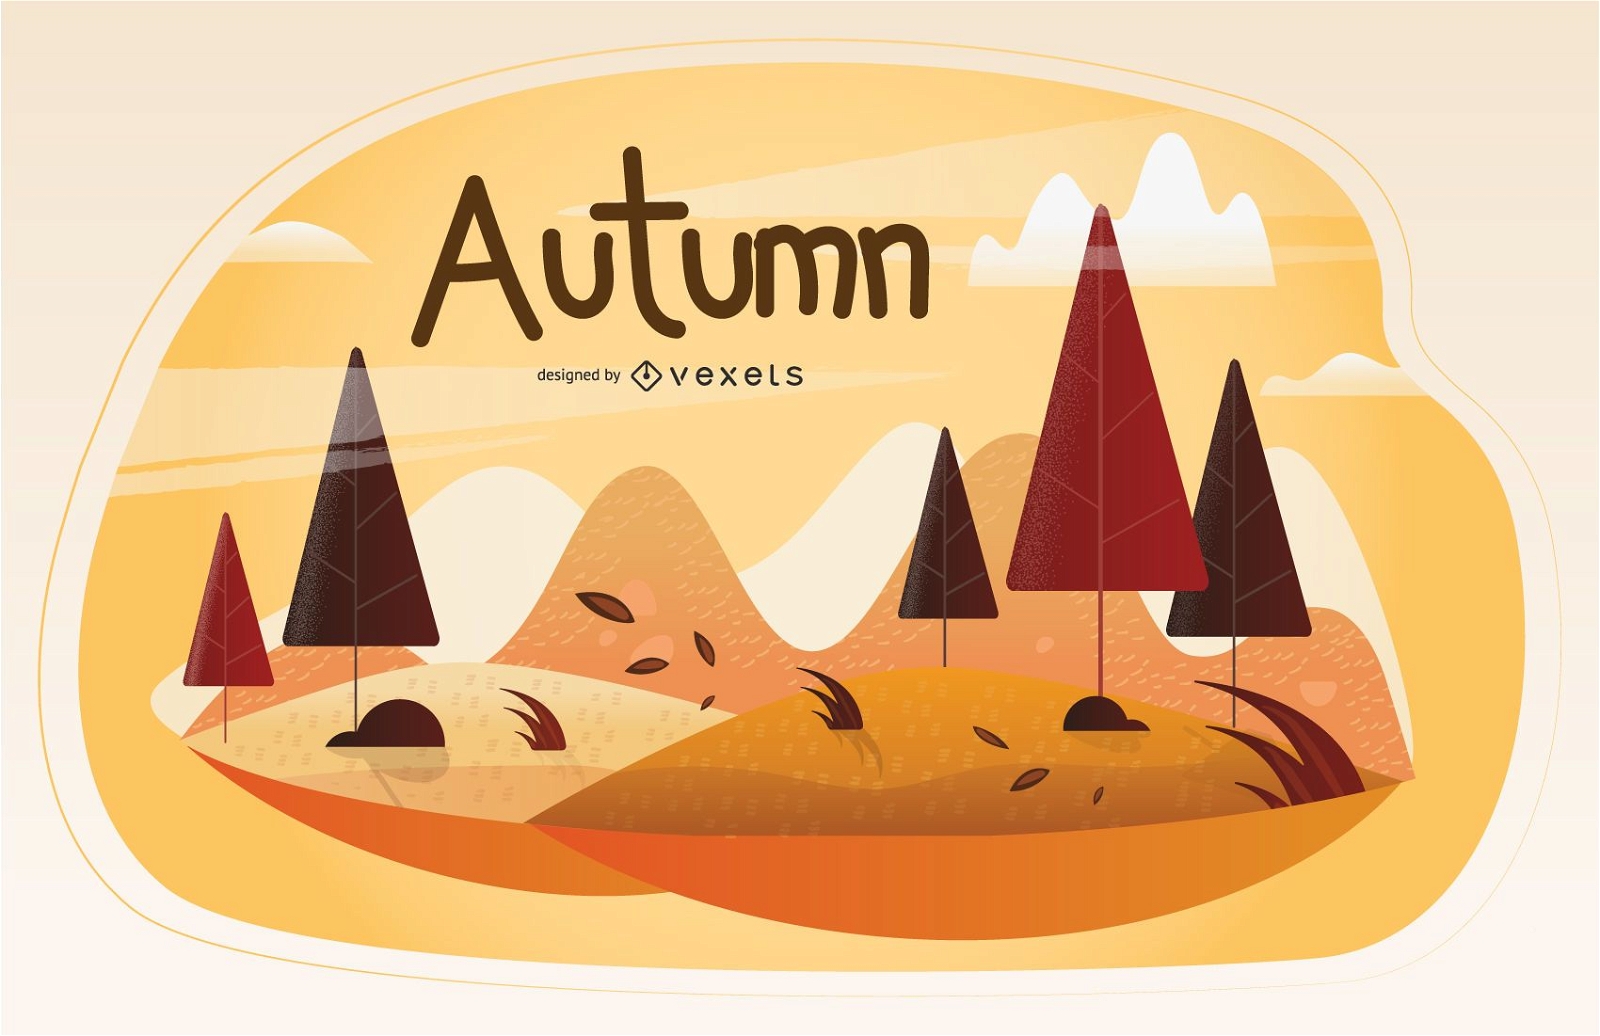 Autumn season illustration